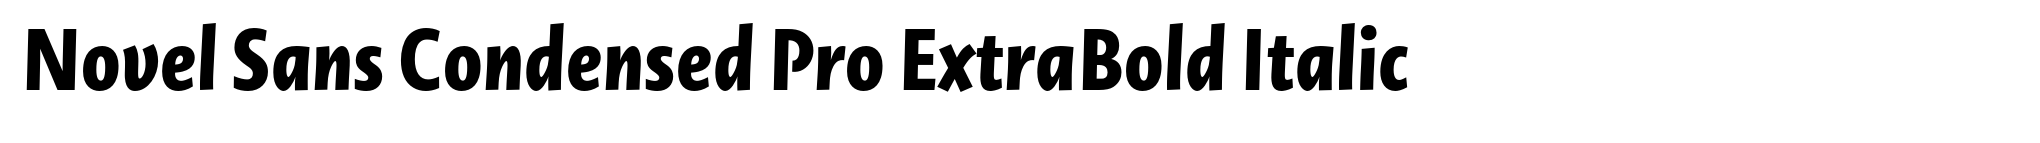 Novel Sans Condensed Pro ExtraBold Italic image